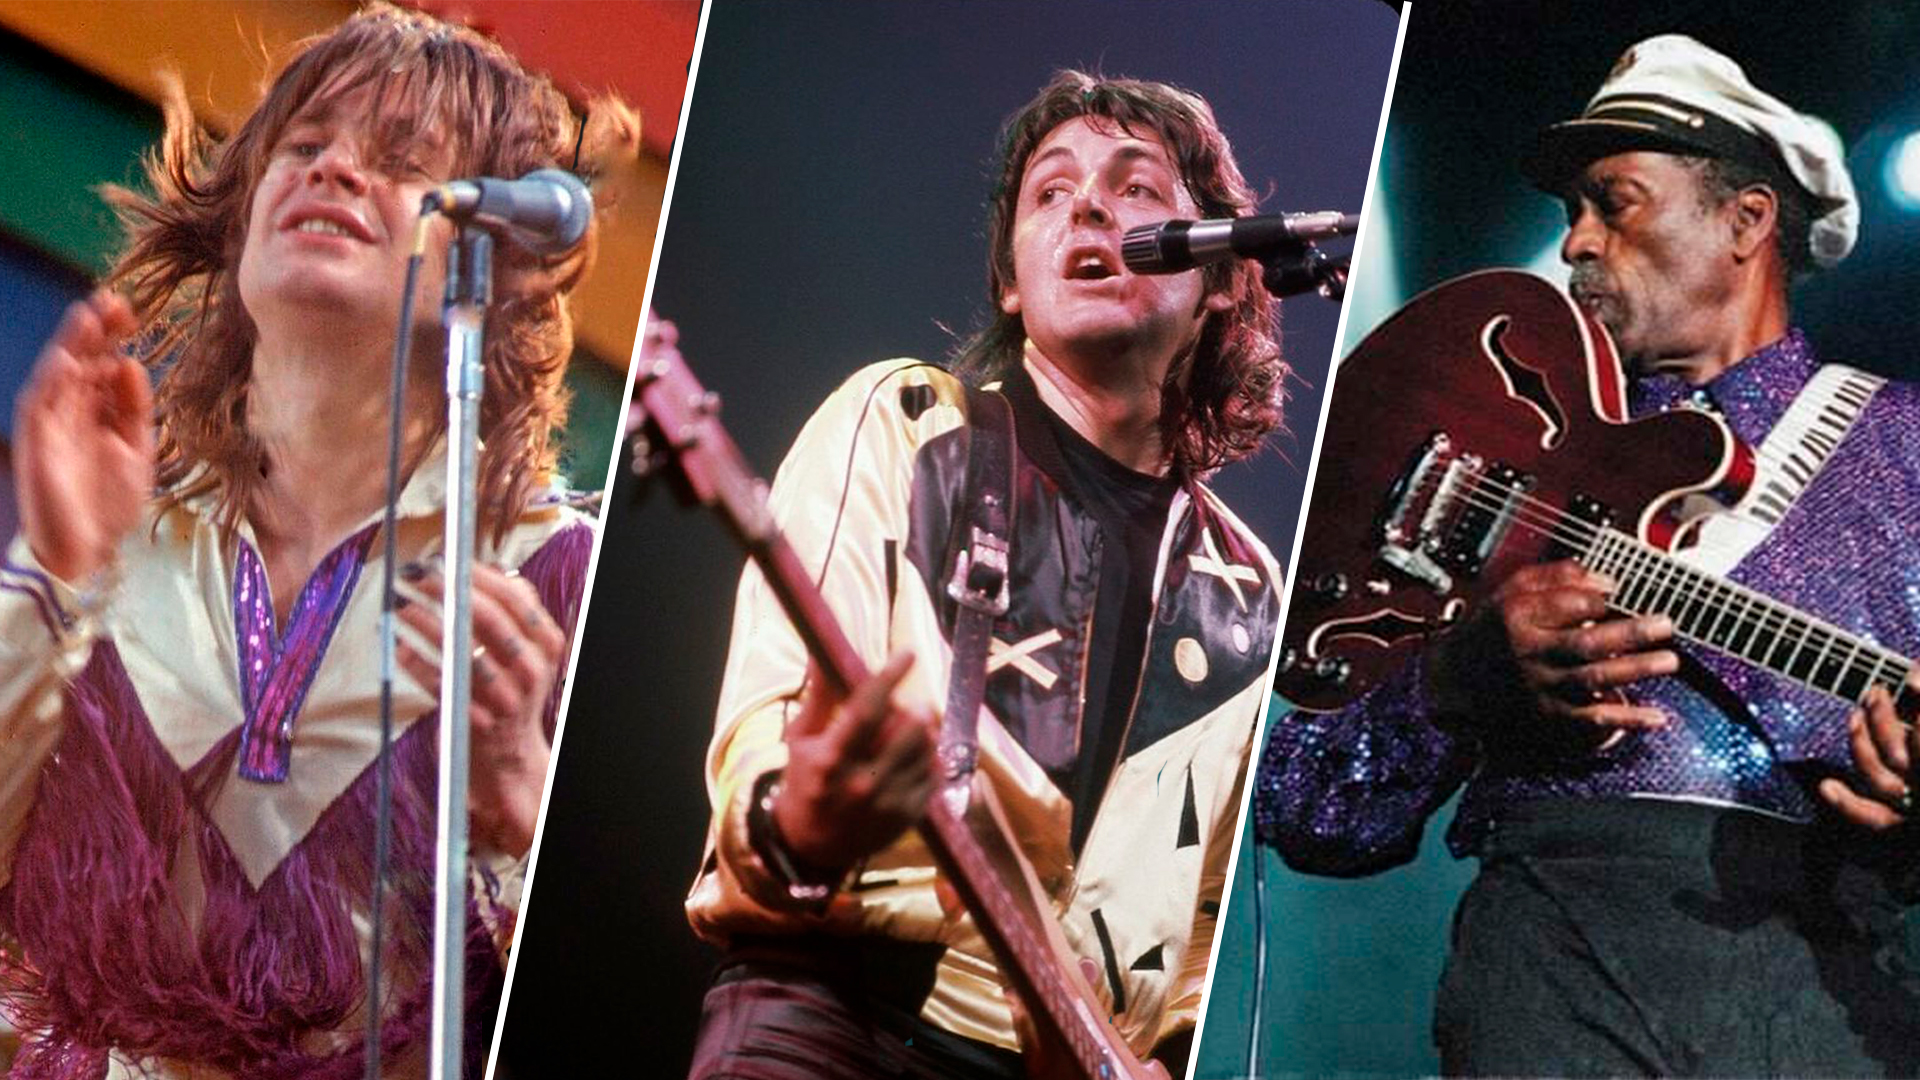 Las grandes estrellas de rock parecen tener imán para los problemas legales. (Fotos: @chuckberry / Instagram - @ozzyosbourne / Instagram - @paulmccartney / Instagram)